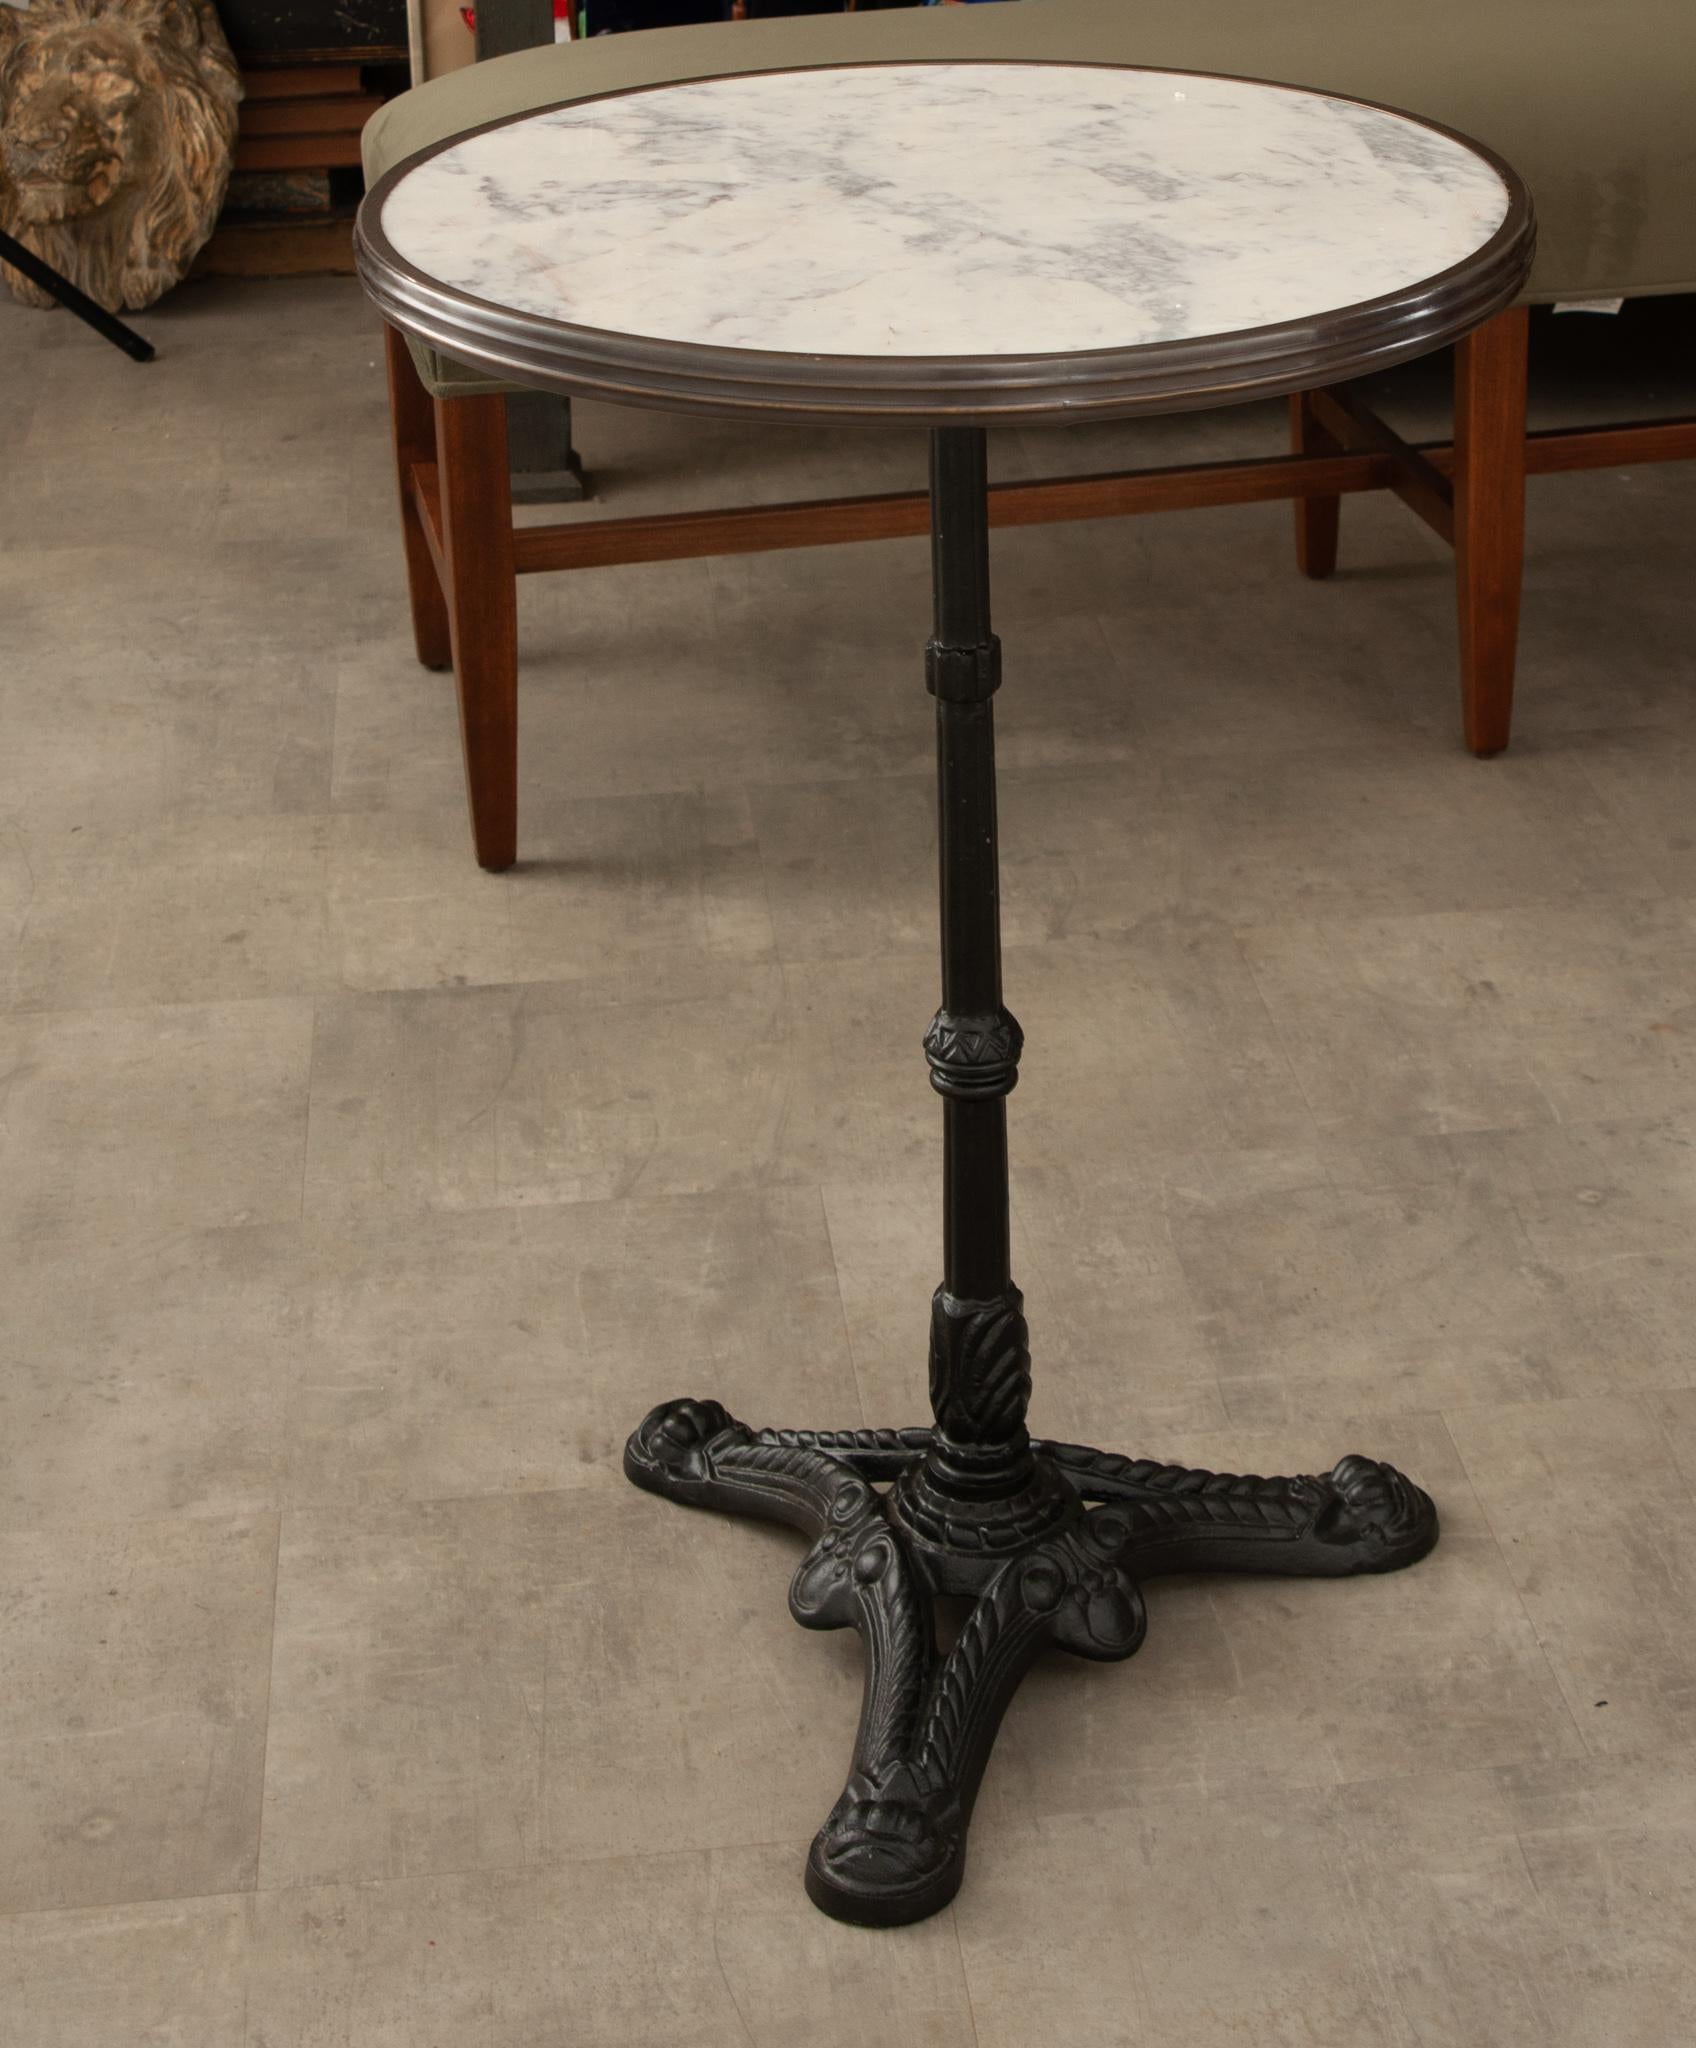 Ein klassischer Bistrotisch im Pariser Stil mit Marmorplatte und Eisen. Die einzigartige Platte aus weißem Marmor wird von einer Zierleiste aus antikem Messing umrahmt. Die Basis ist ein klassischer gusseiserner Sockel mit drei Füßen. Dieser Tisch